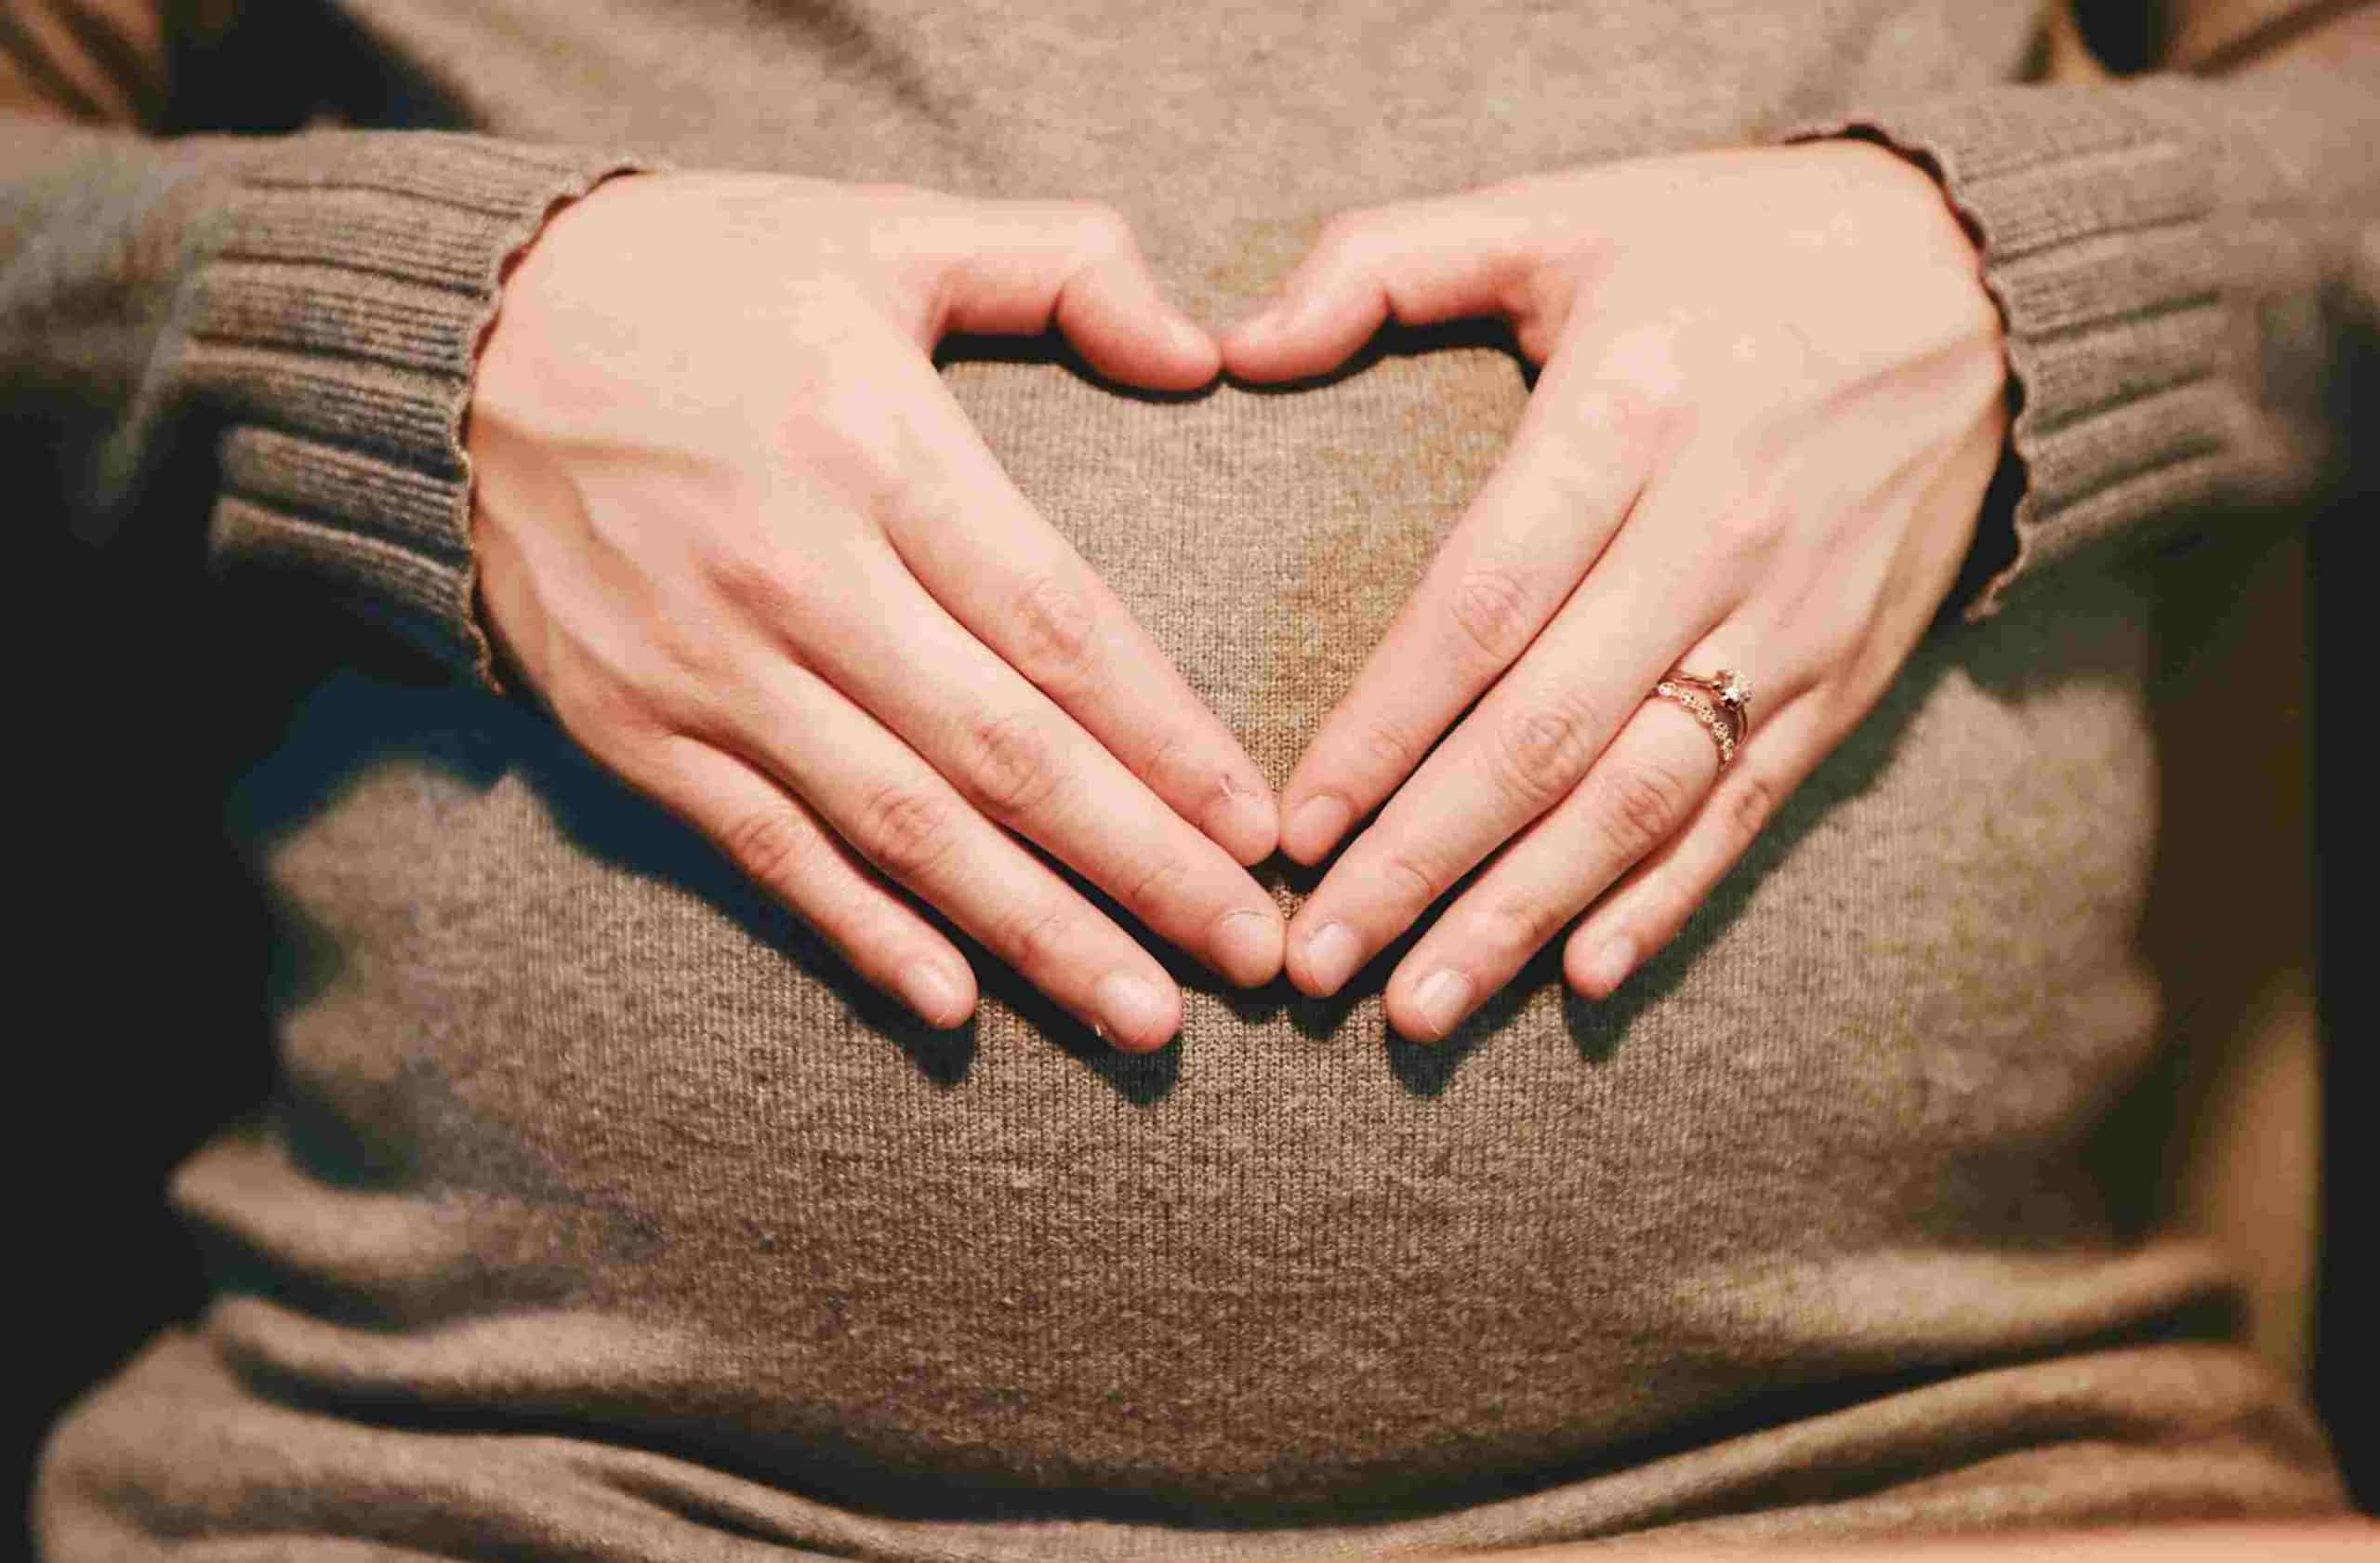 Τα μωρά που γεννιούνται από υπέρβαρες γυναίκες είναι πιο πιθανό να έρθουν στη ζωή πρόωρα.